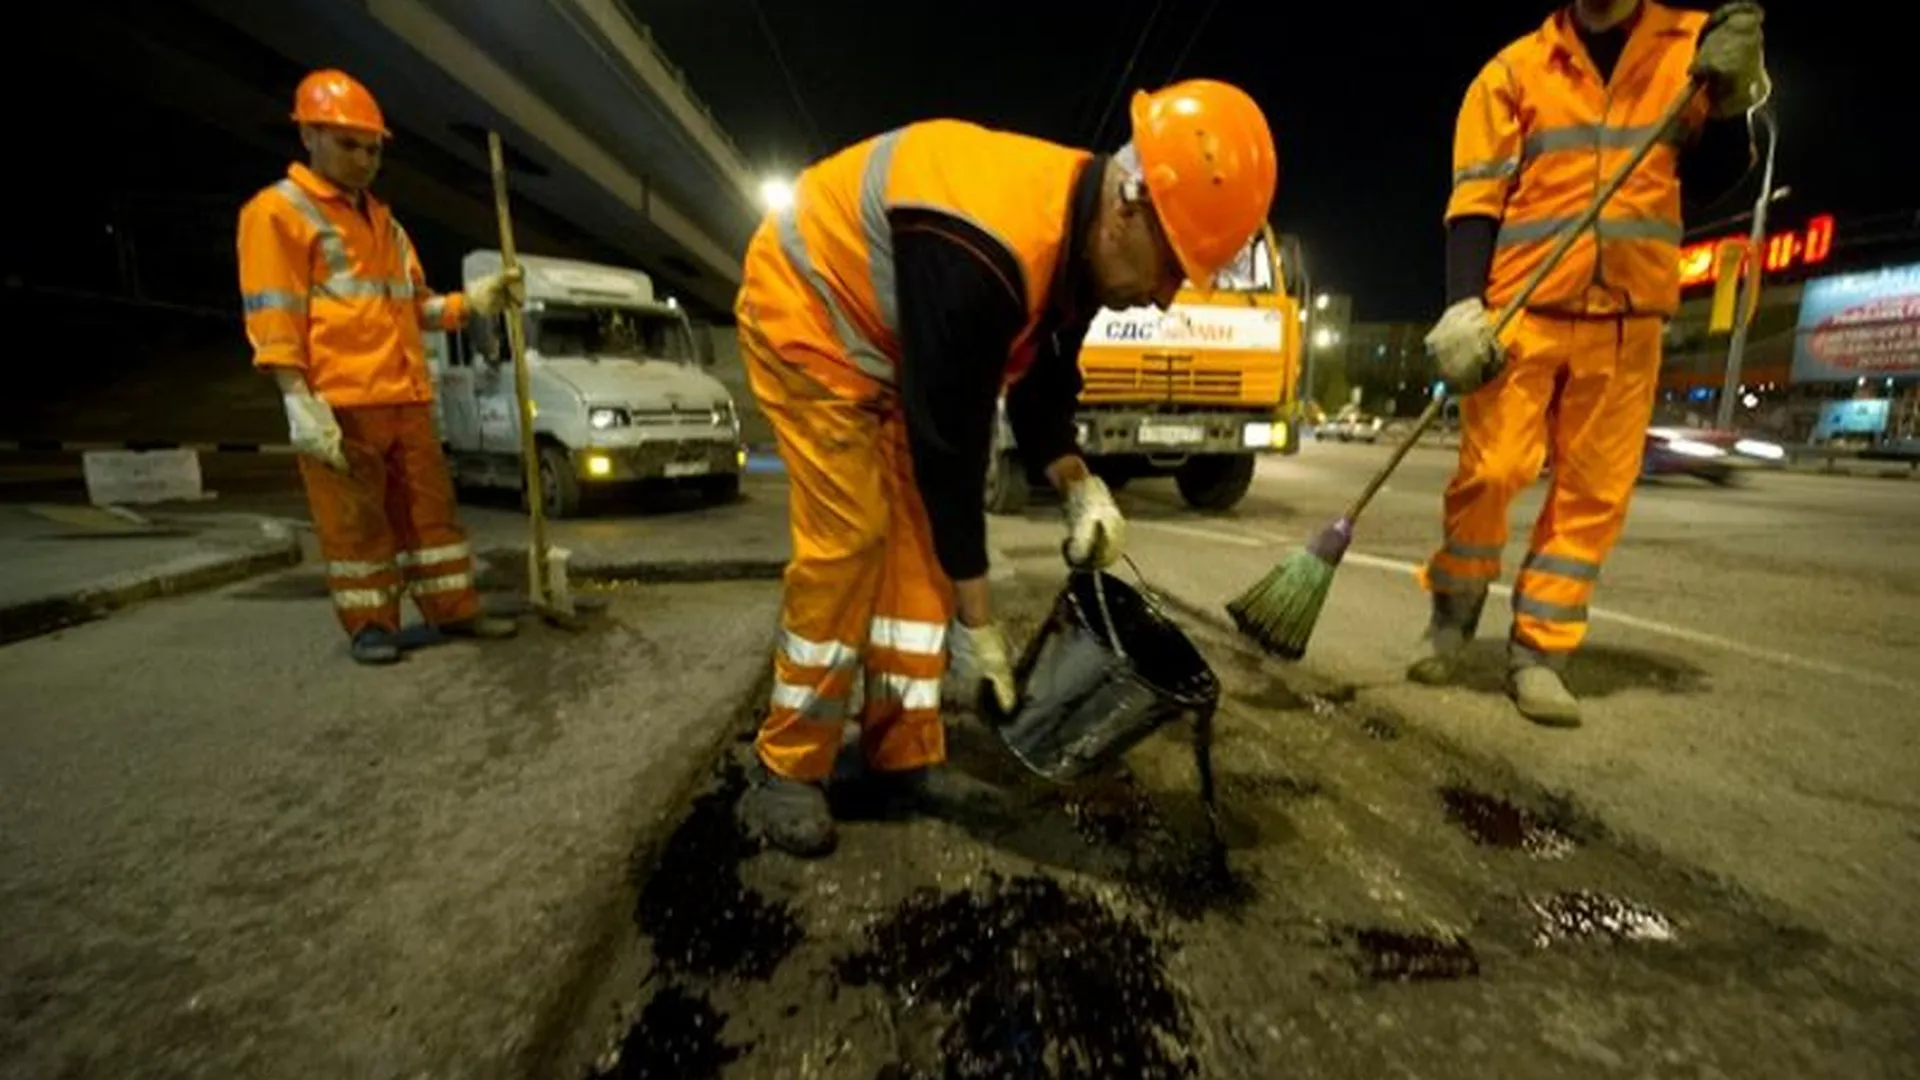 МО дополнительно выделила 1,6 млрд руб на ремонт дорог